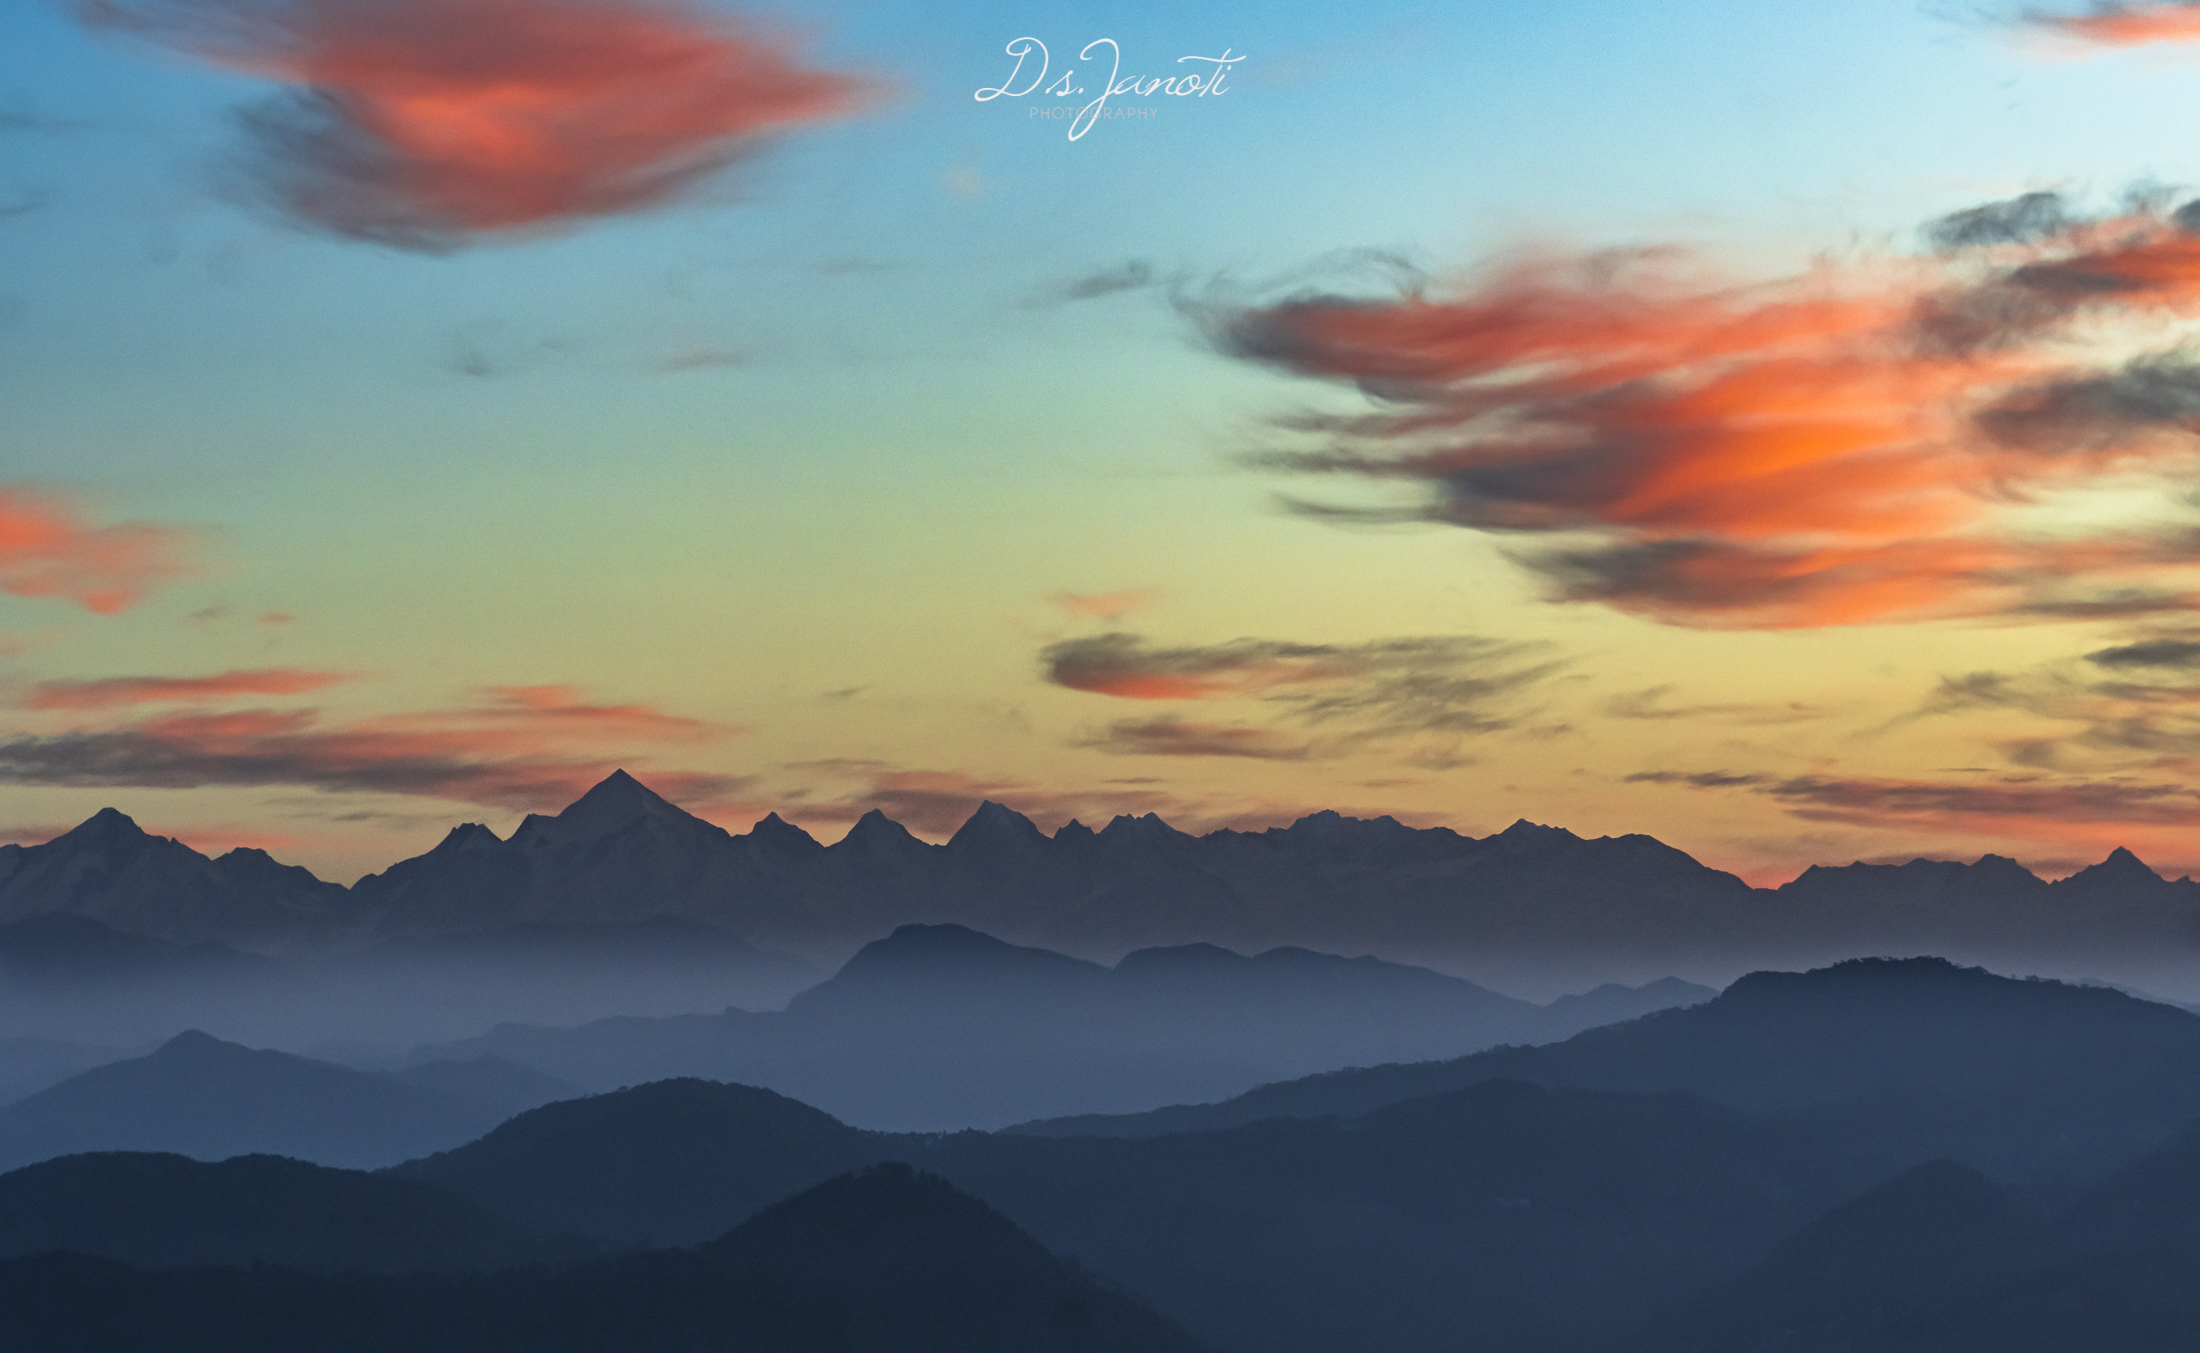 #morning #himalaya #sunrise #beauty #beautiful, Digvijay singh Janoti